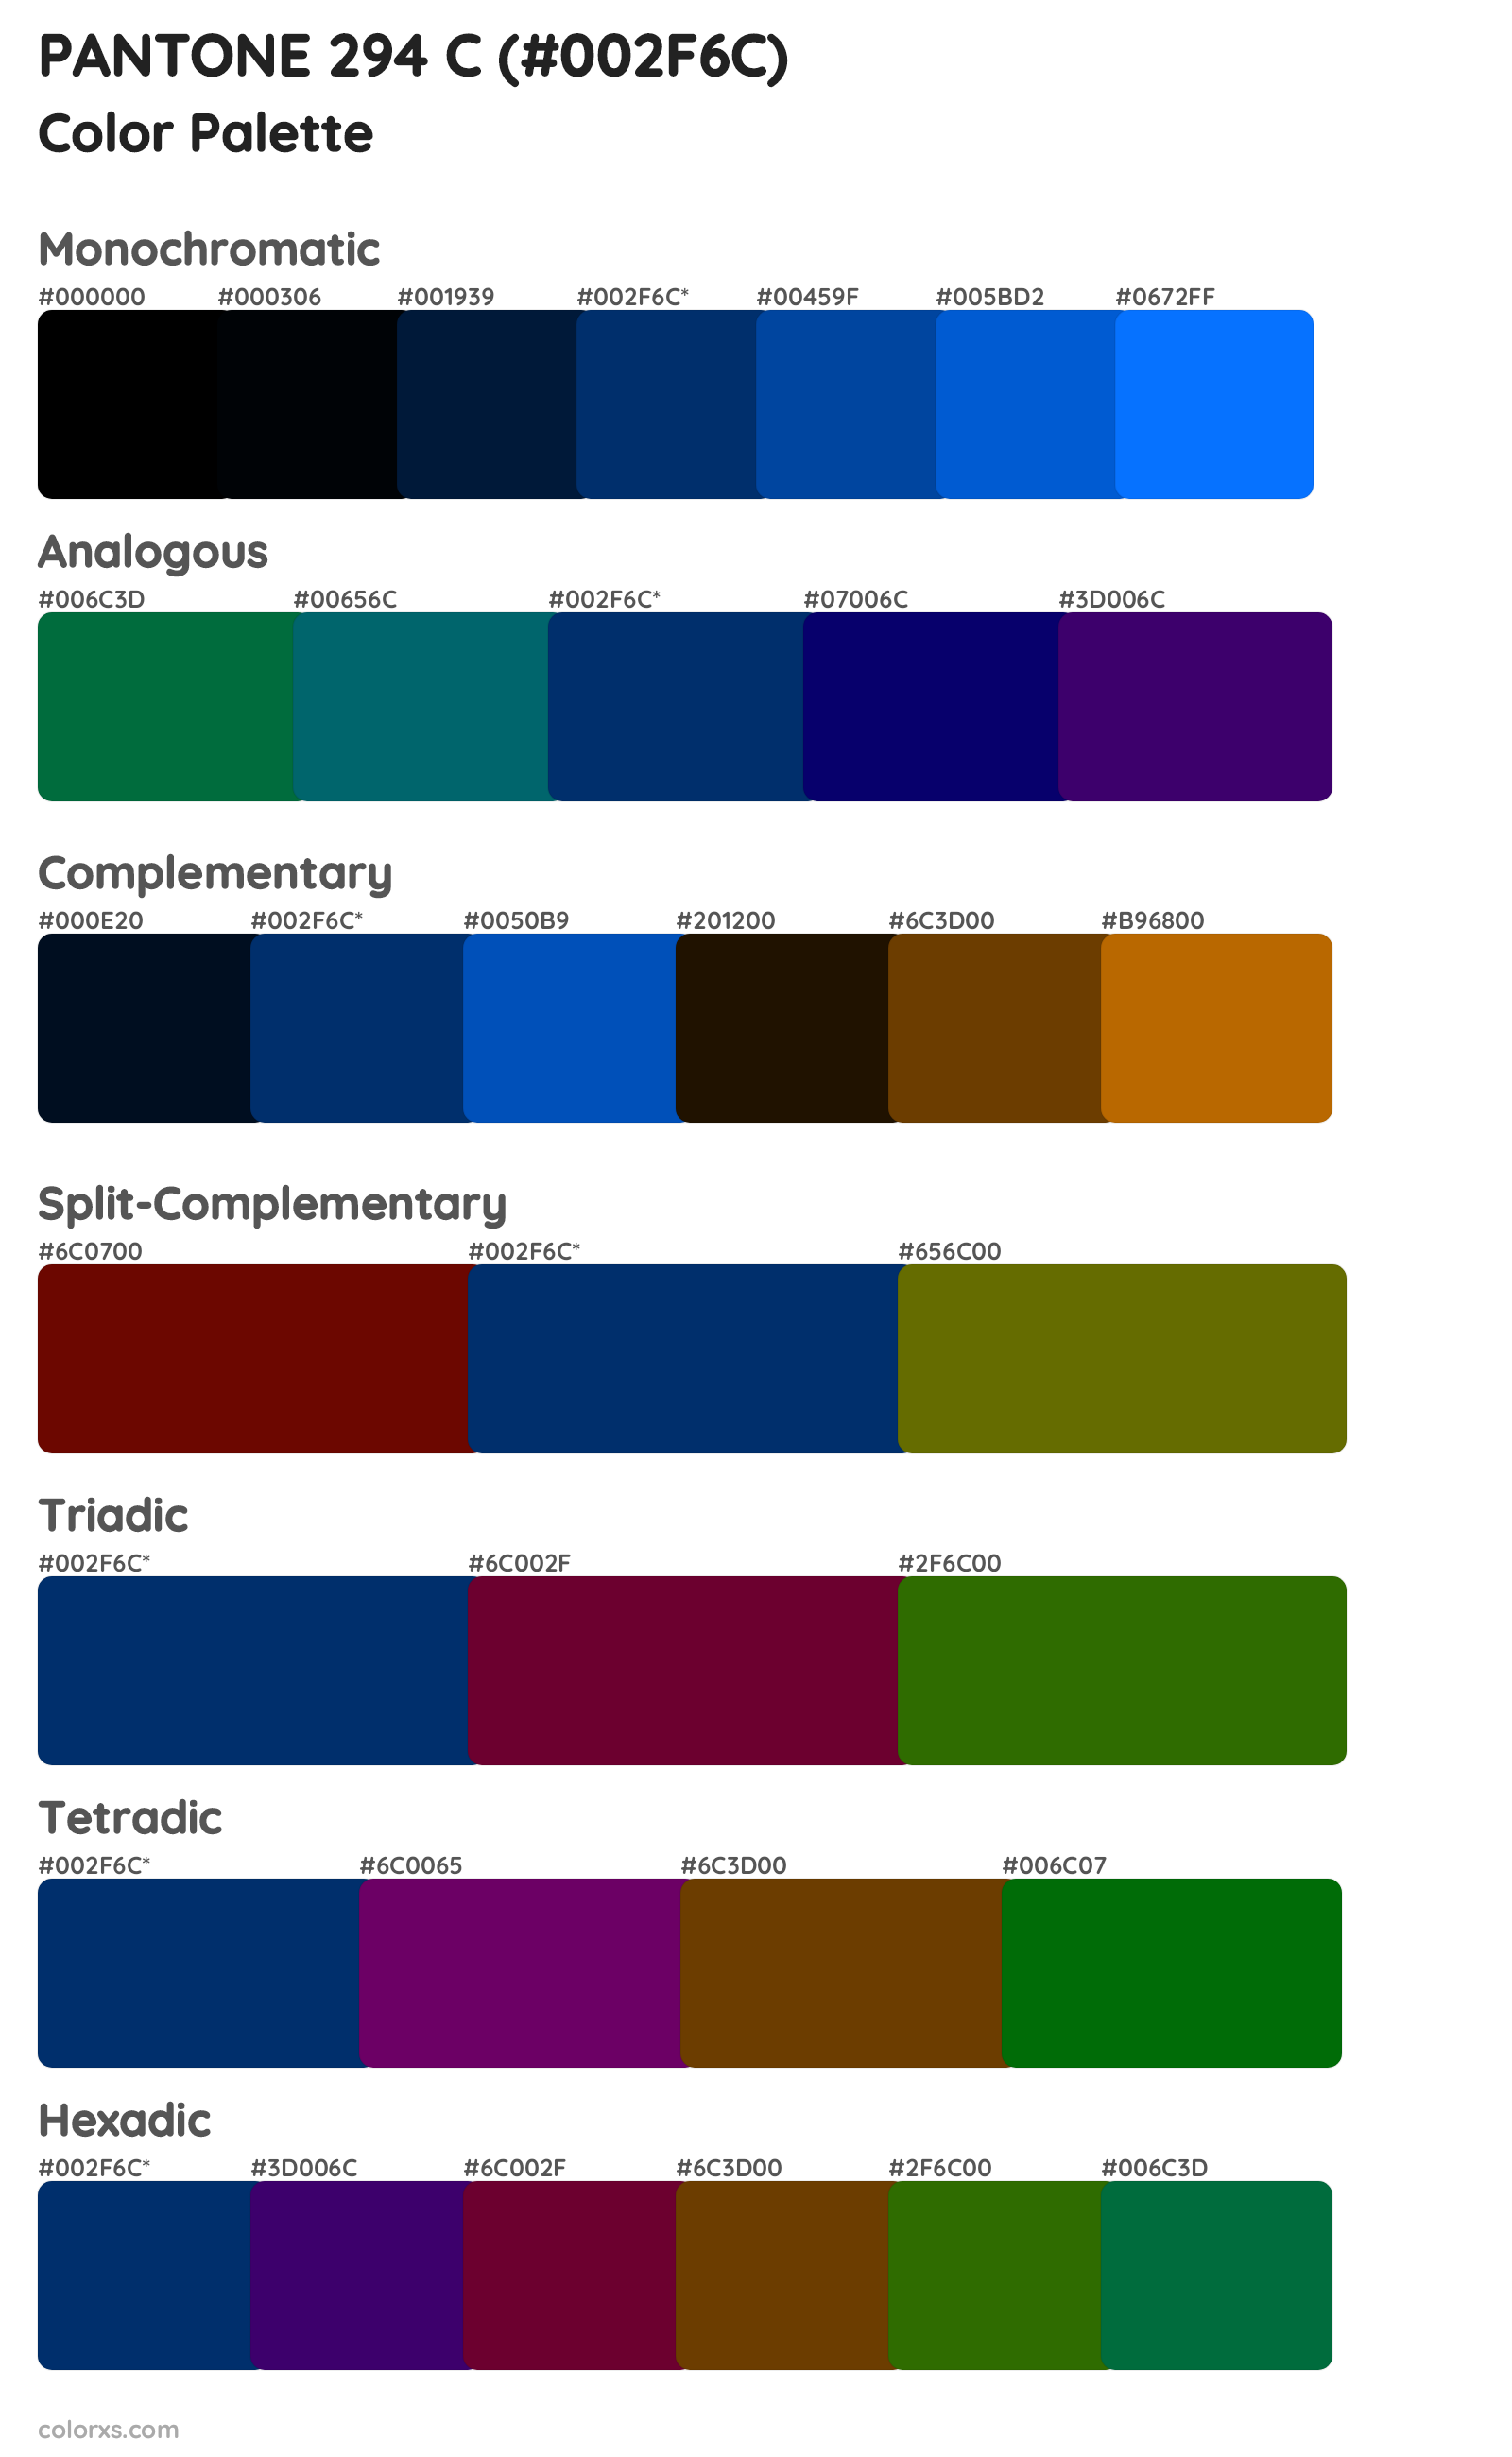 PANTONE 294 C Color Scheme Palettes